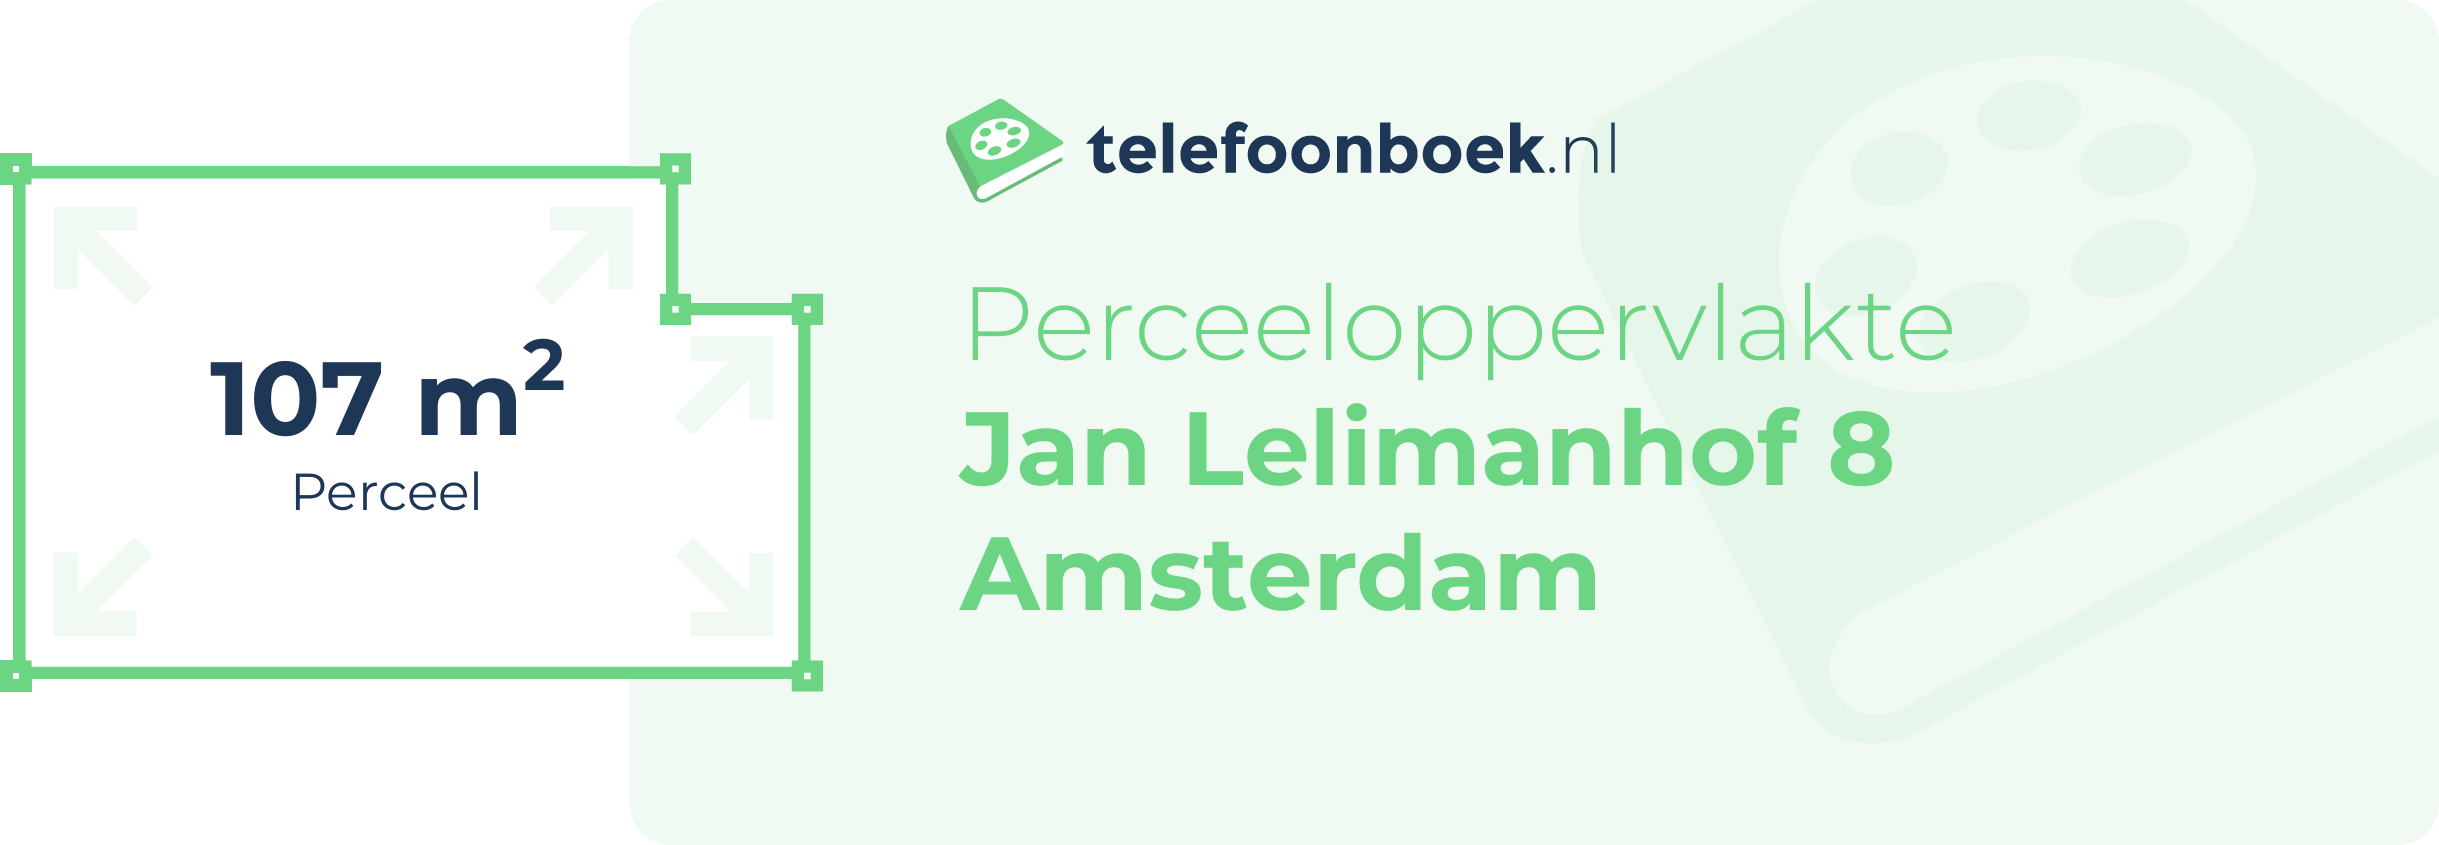 Perceeloppervlakte Jan Lelimanhof 8 Amsterdam